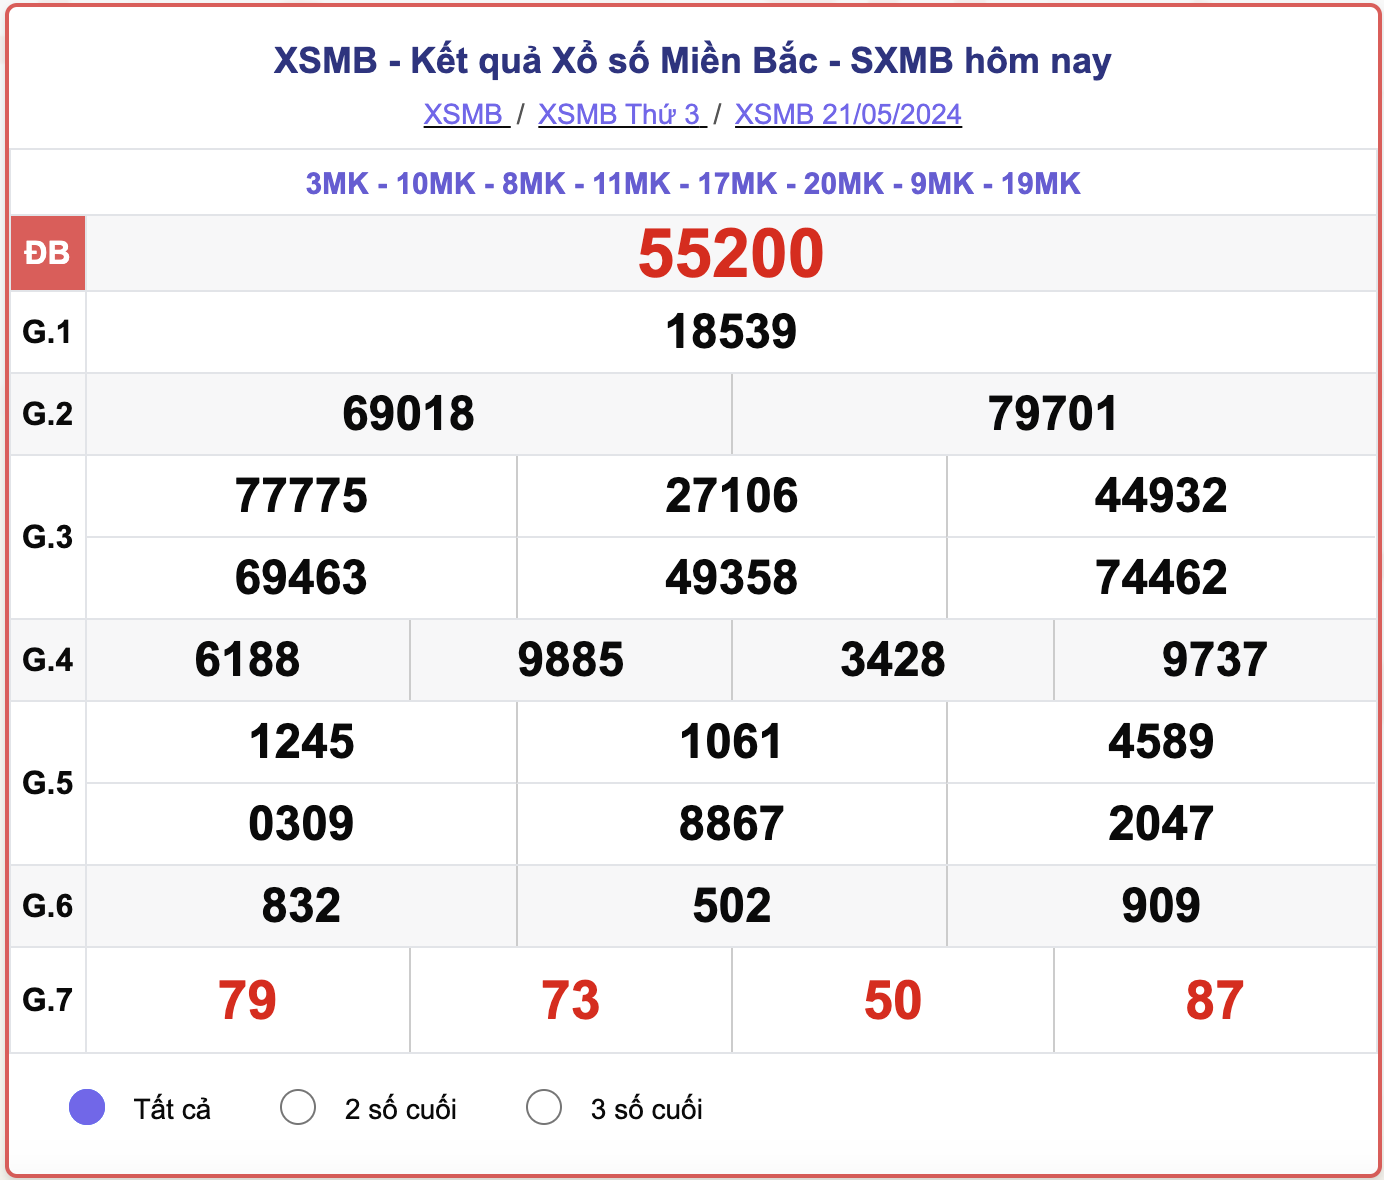 XSMB 25/5 - Kết quả xổ số miền Bắc hôm nay 25/5/2024 - KQXSMB ngày 25/5- Ảnh 5.